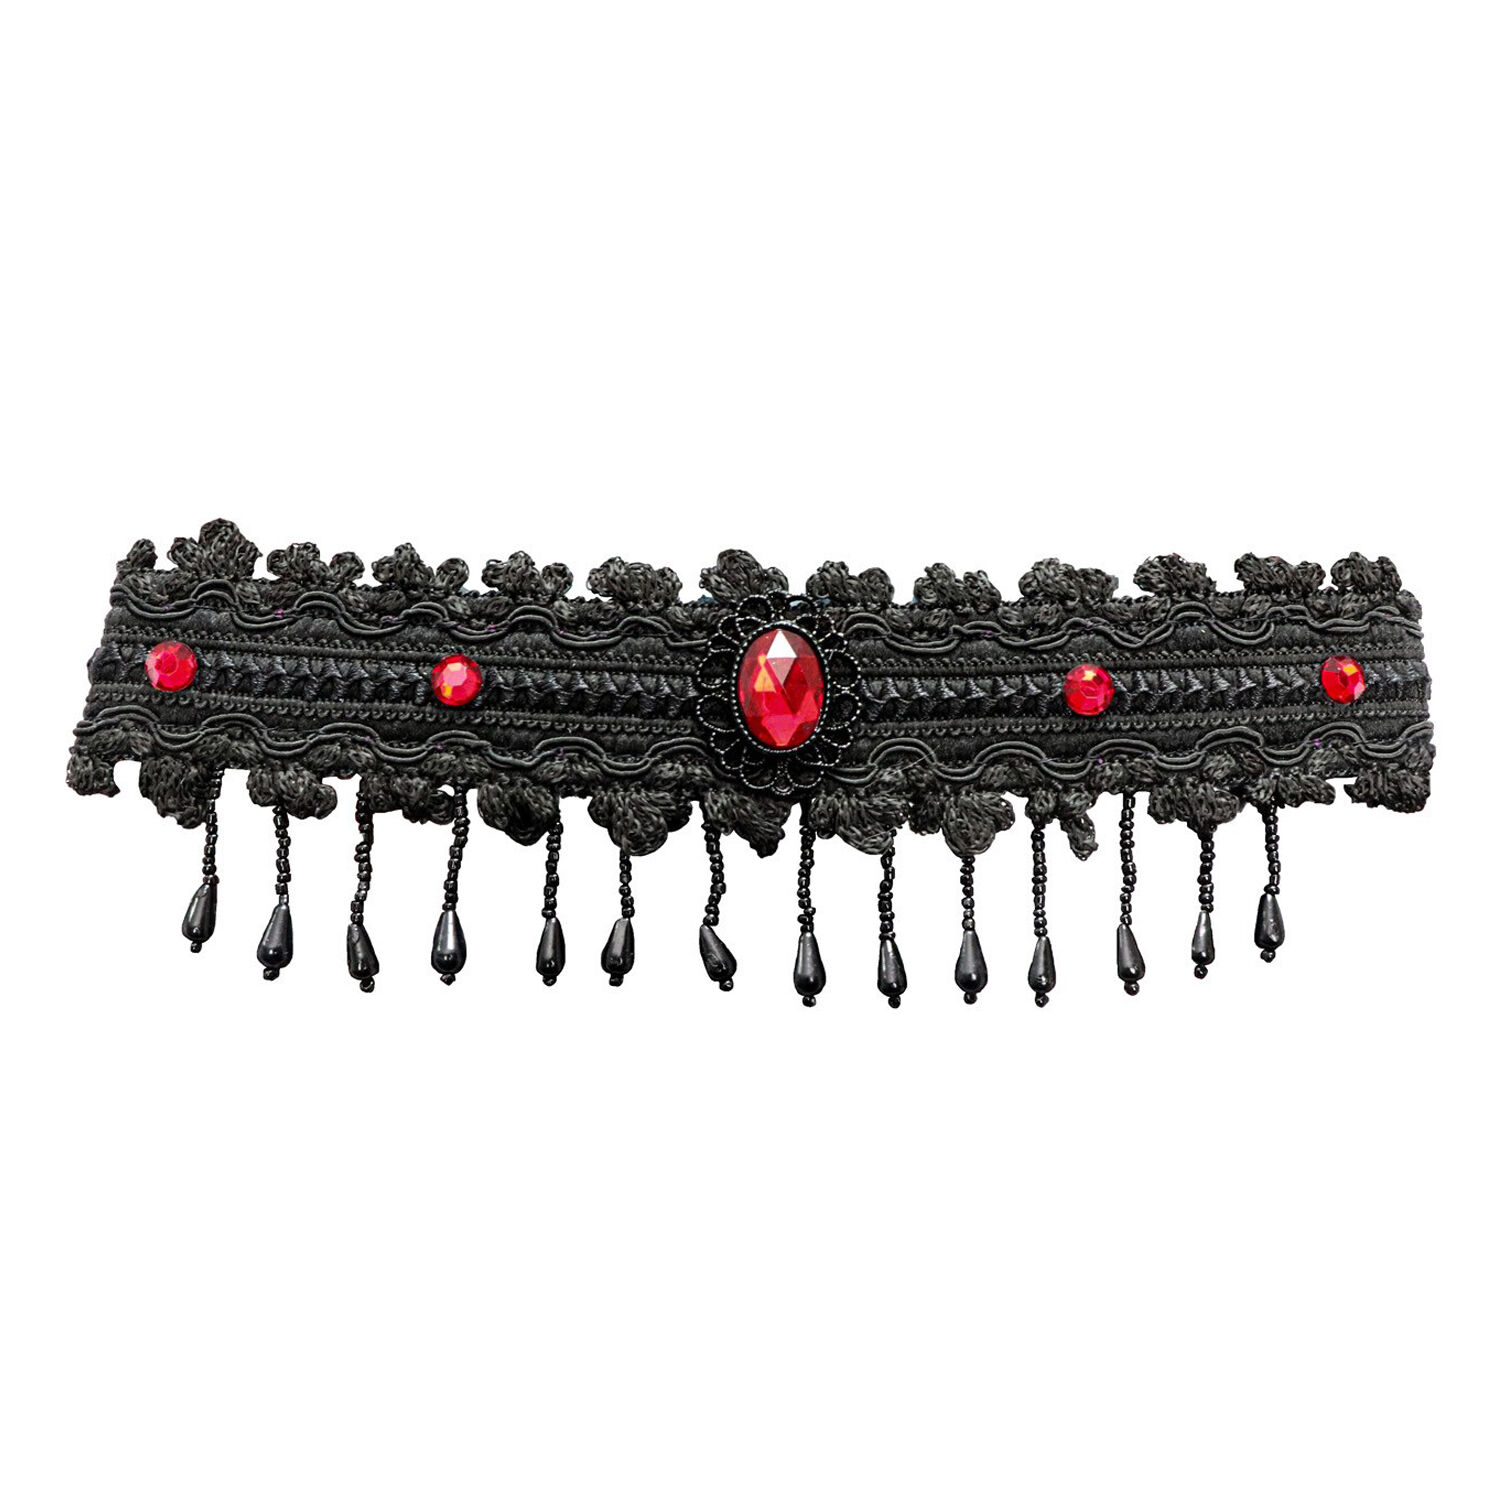 NEU Halsband im Gothic- / Halloween-Look, Schwarz mit roten Steinen